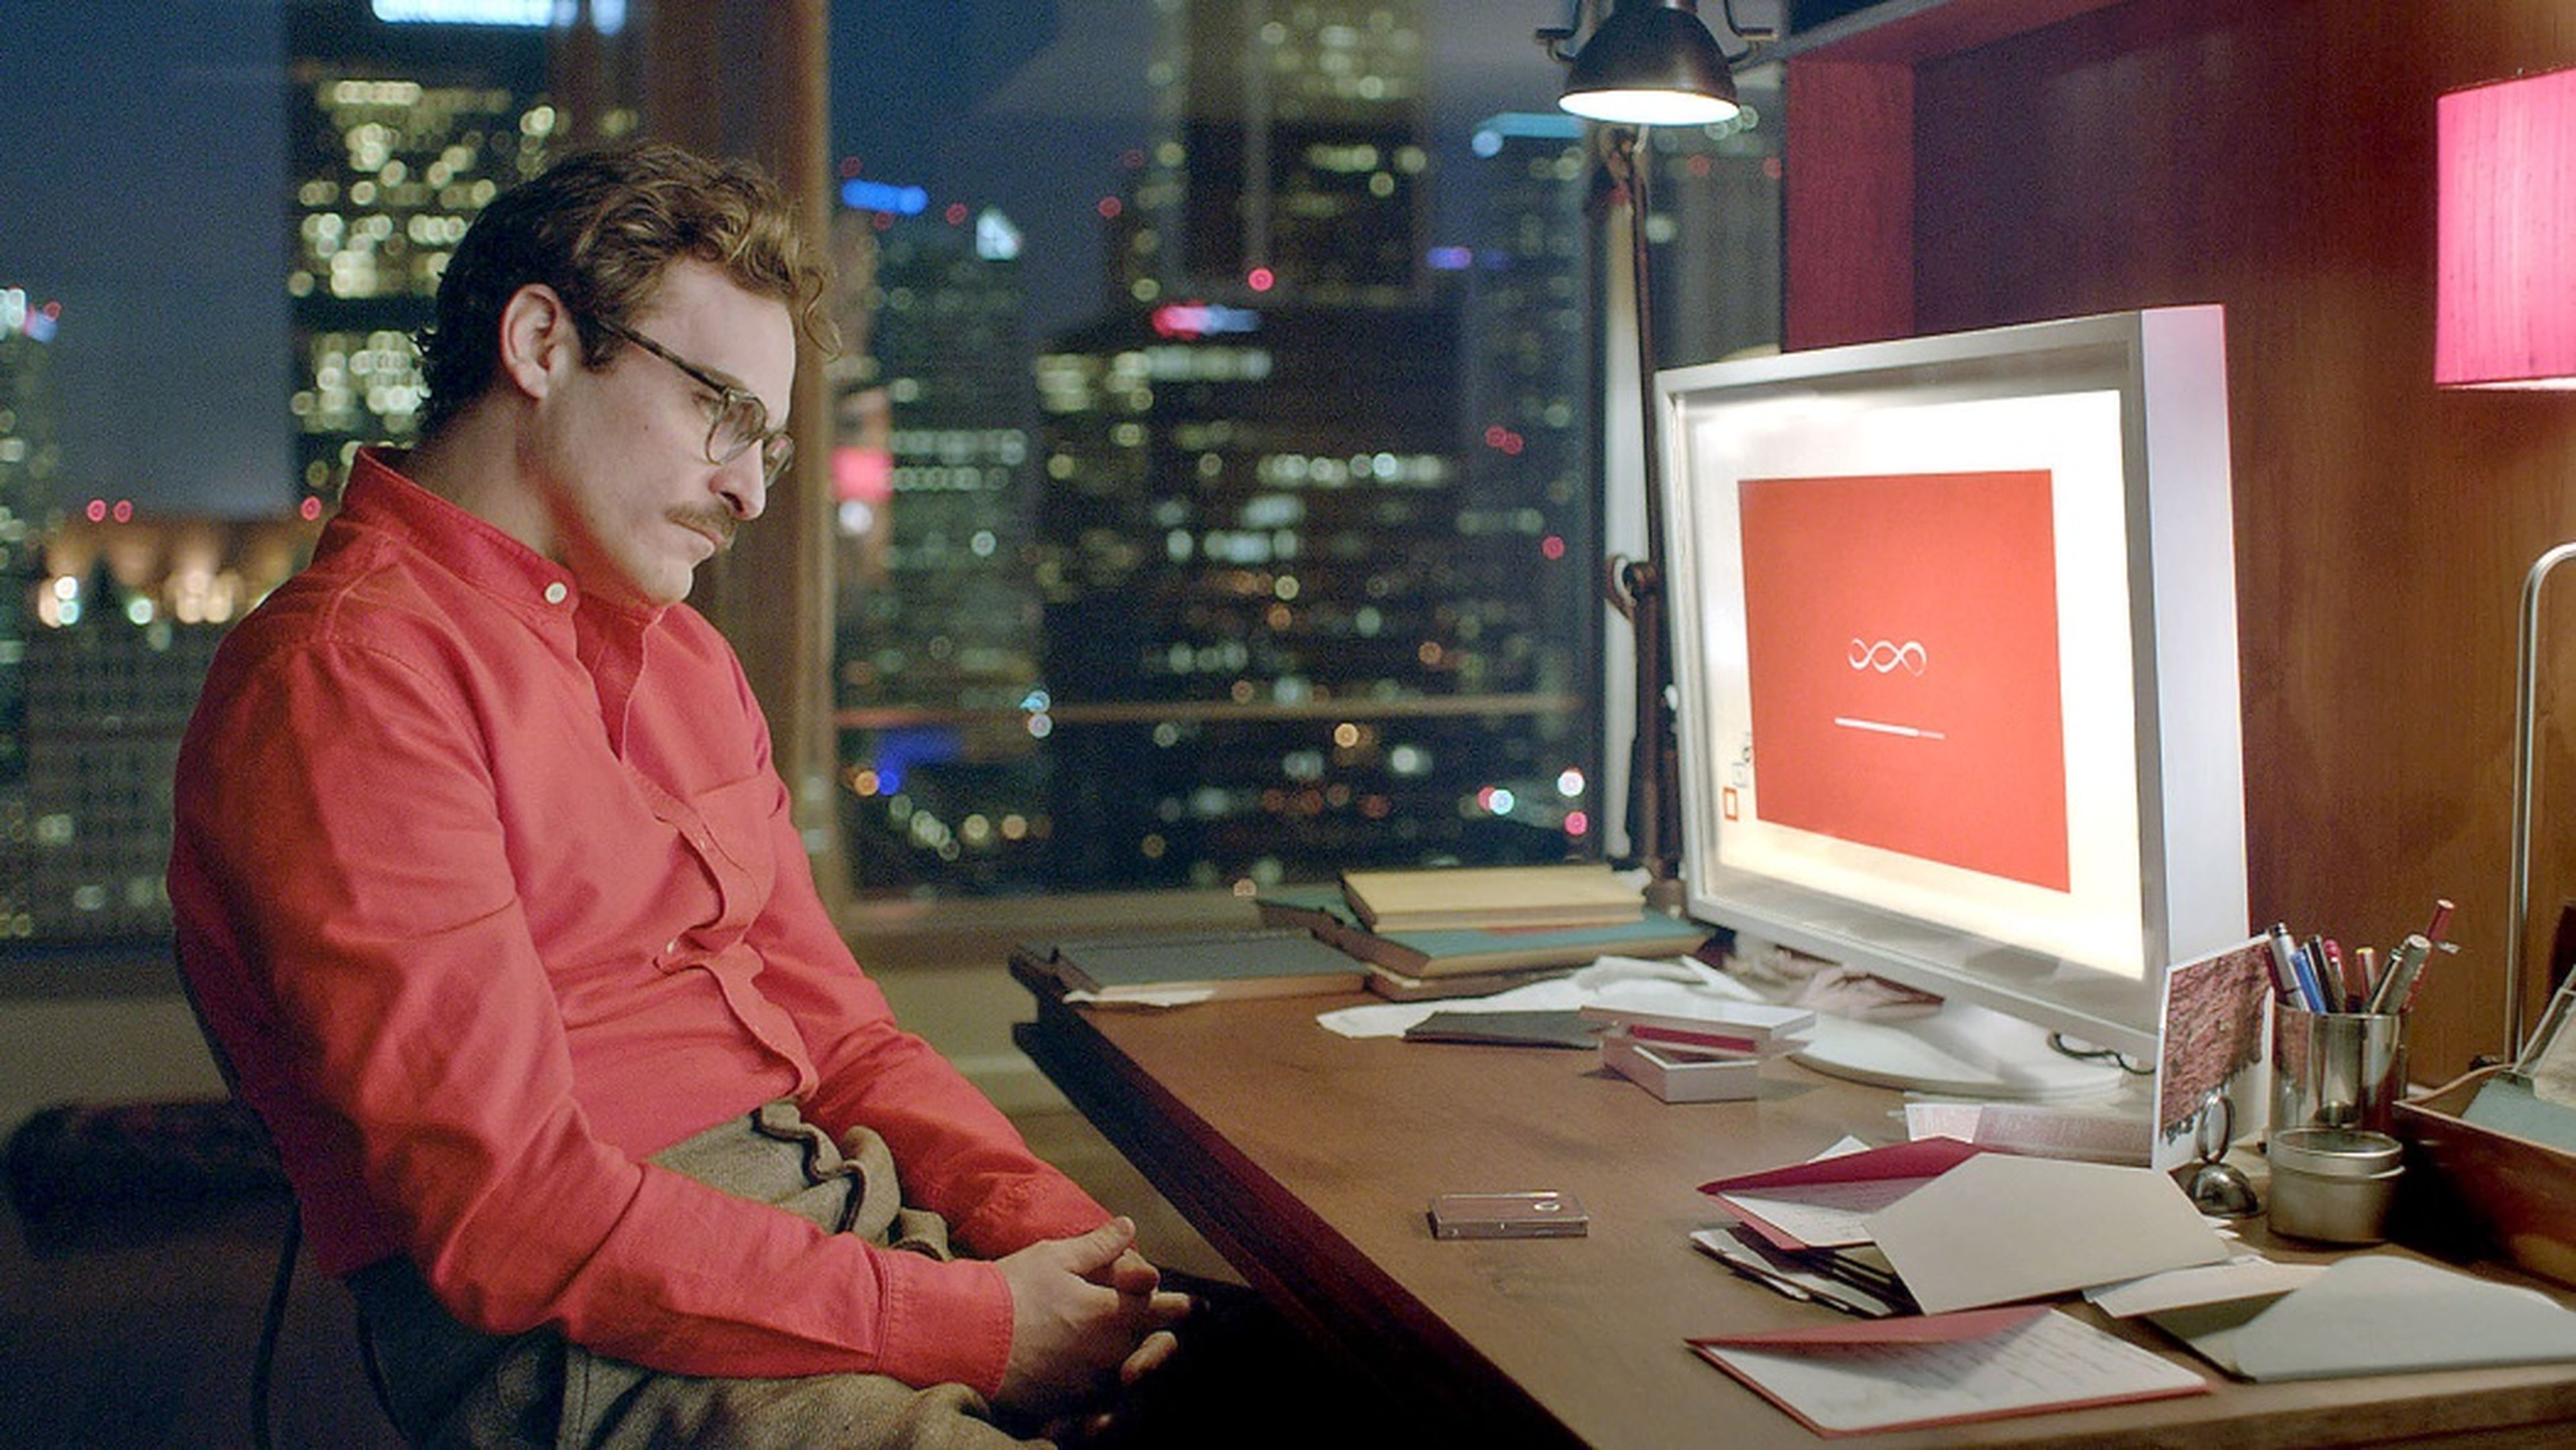 La película 'Her' plantea una relación romántica entre el protagonista y una inteligencia artificial, Samantha, presente en su móvil y su ordenador.